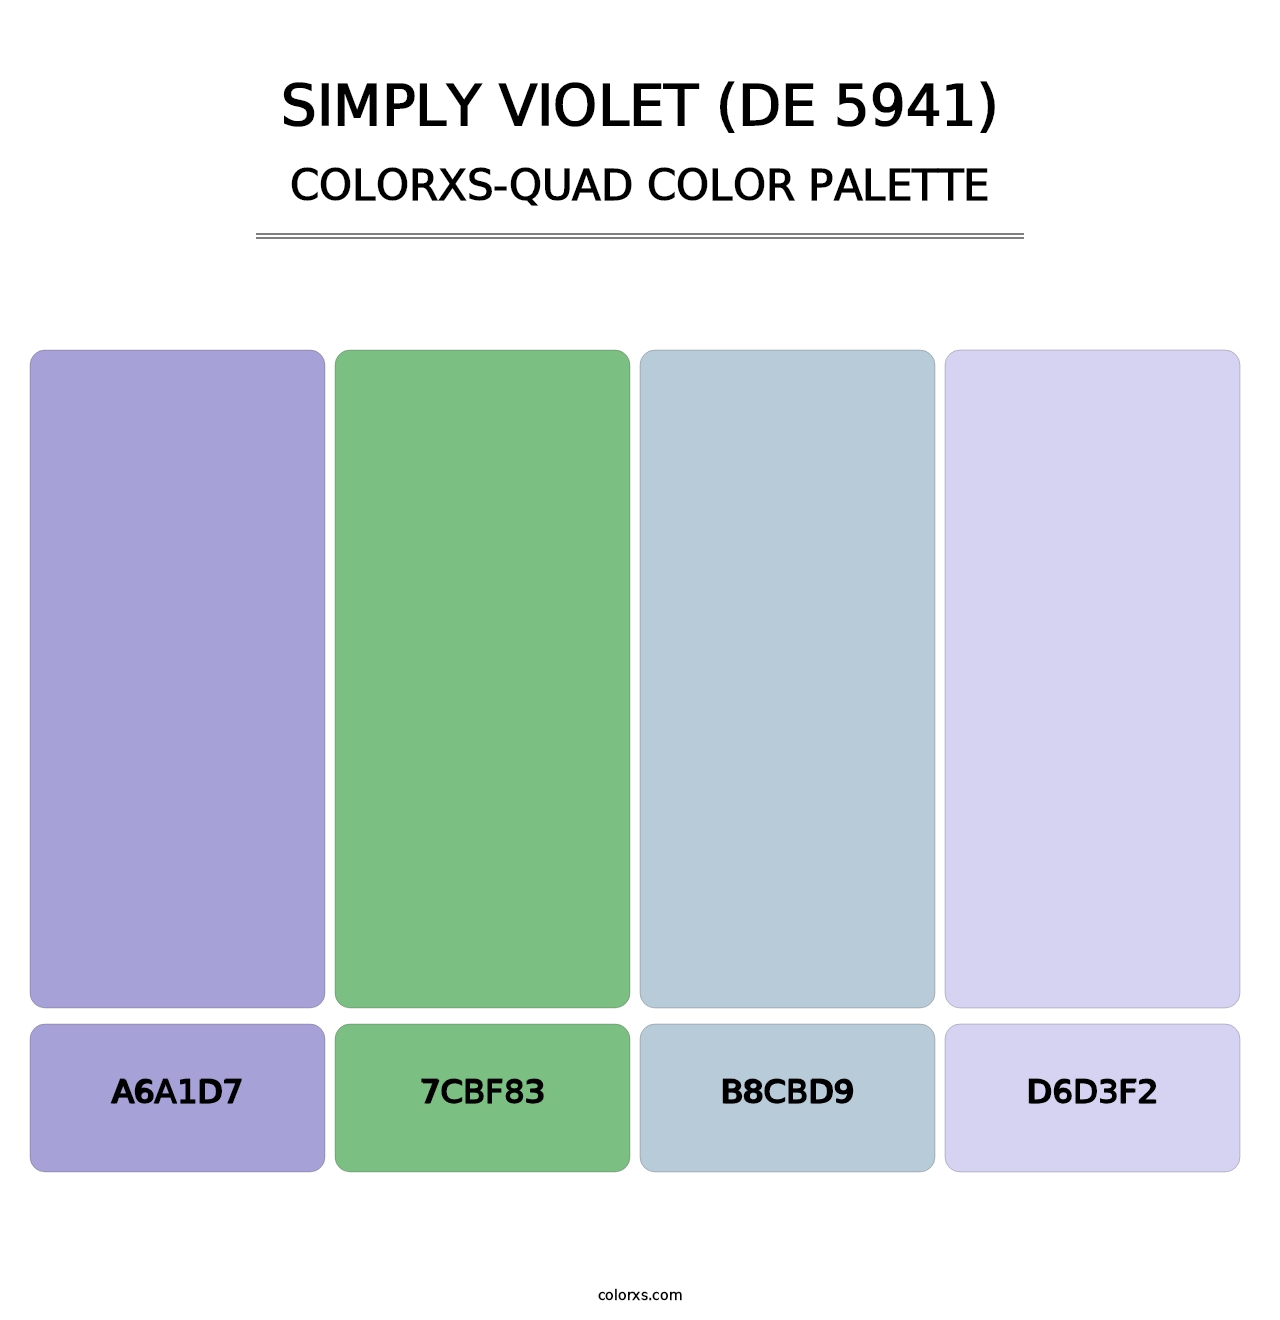 Simply Violet (DE 5941) - Colorxs Quad Palette